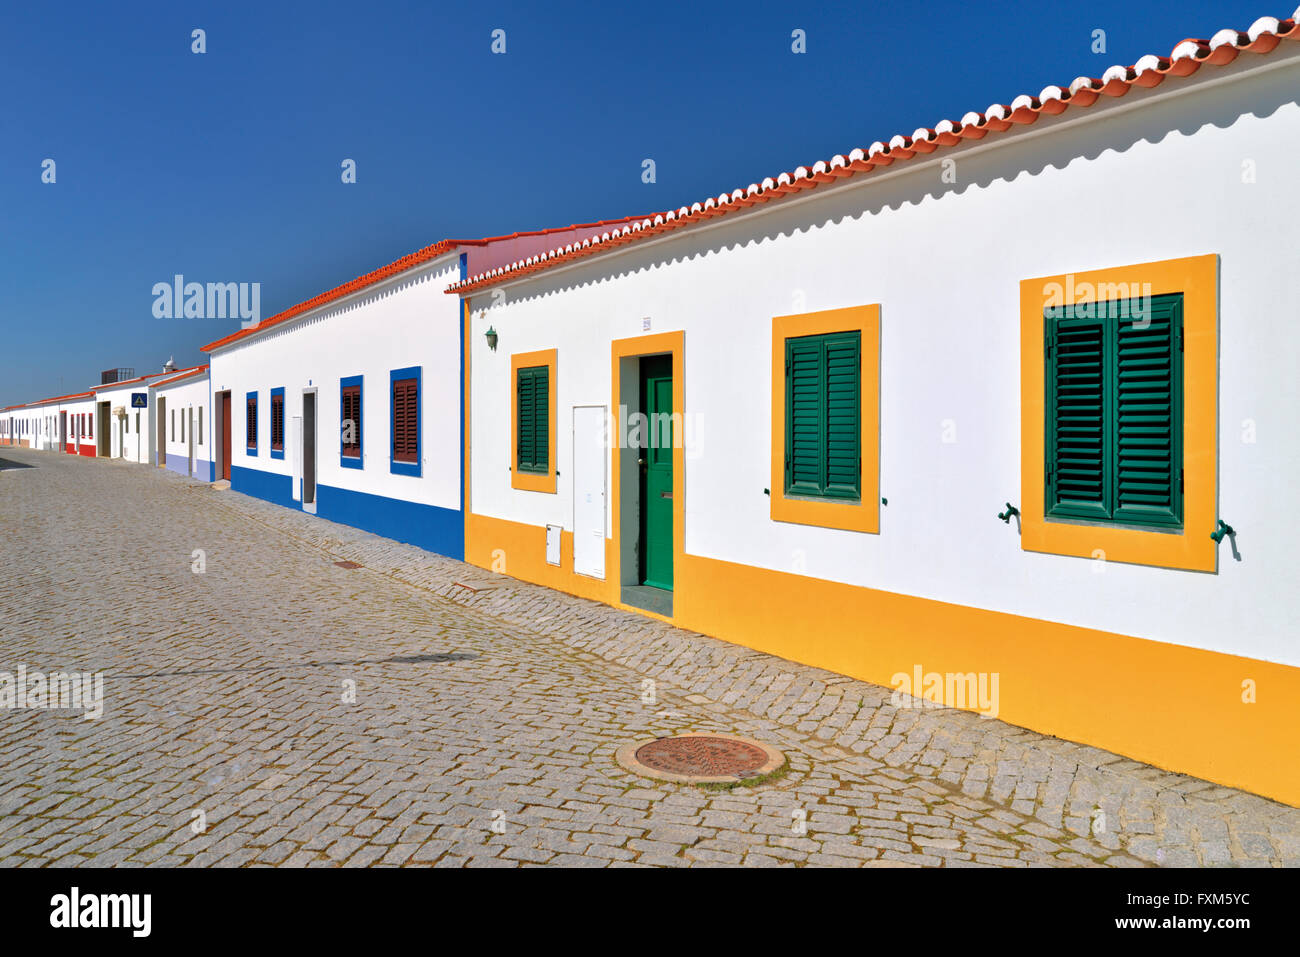 Portugal, Alentejo: Typical architecture in the reconstructed village Aldeia da Luz Stock Photo